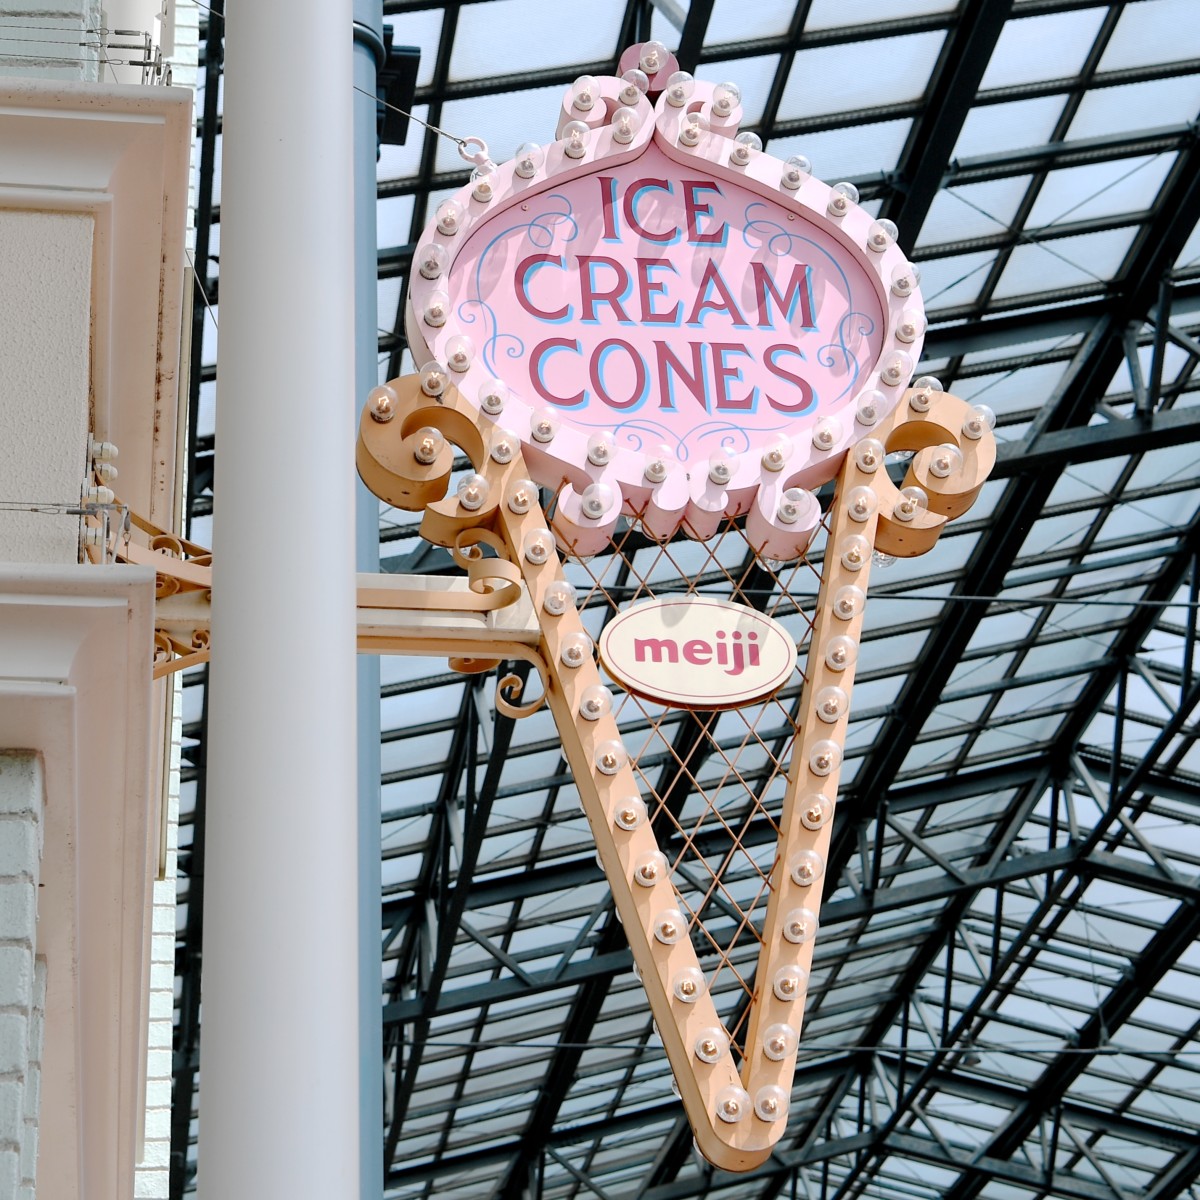 ポップでかわいいトッピング 東京ディズニーランド Pink Pop Paradise ソフトクリーム チョコレート